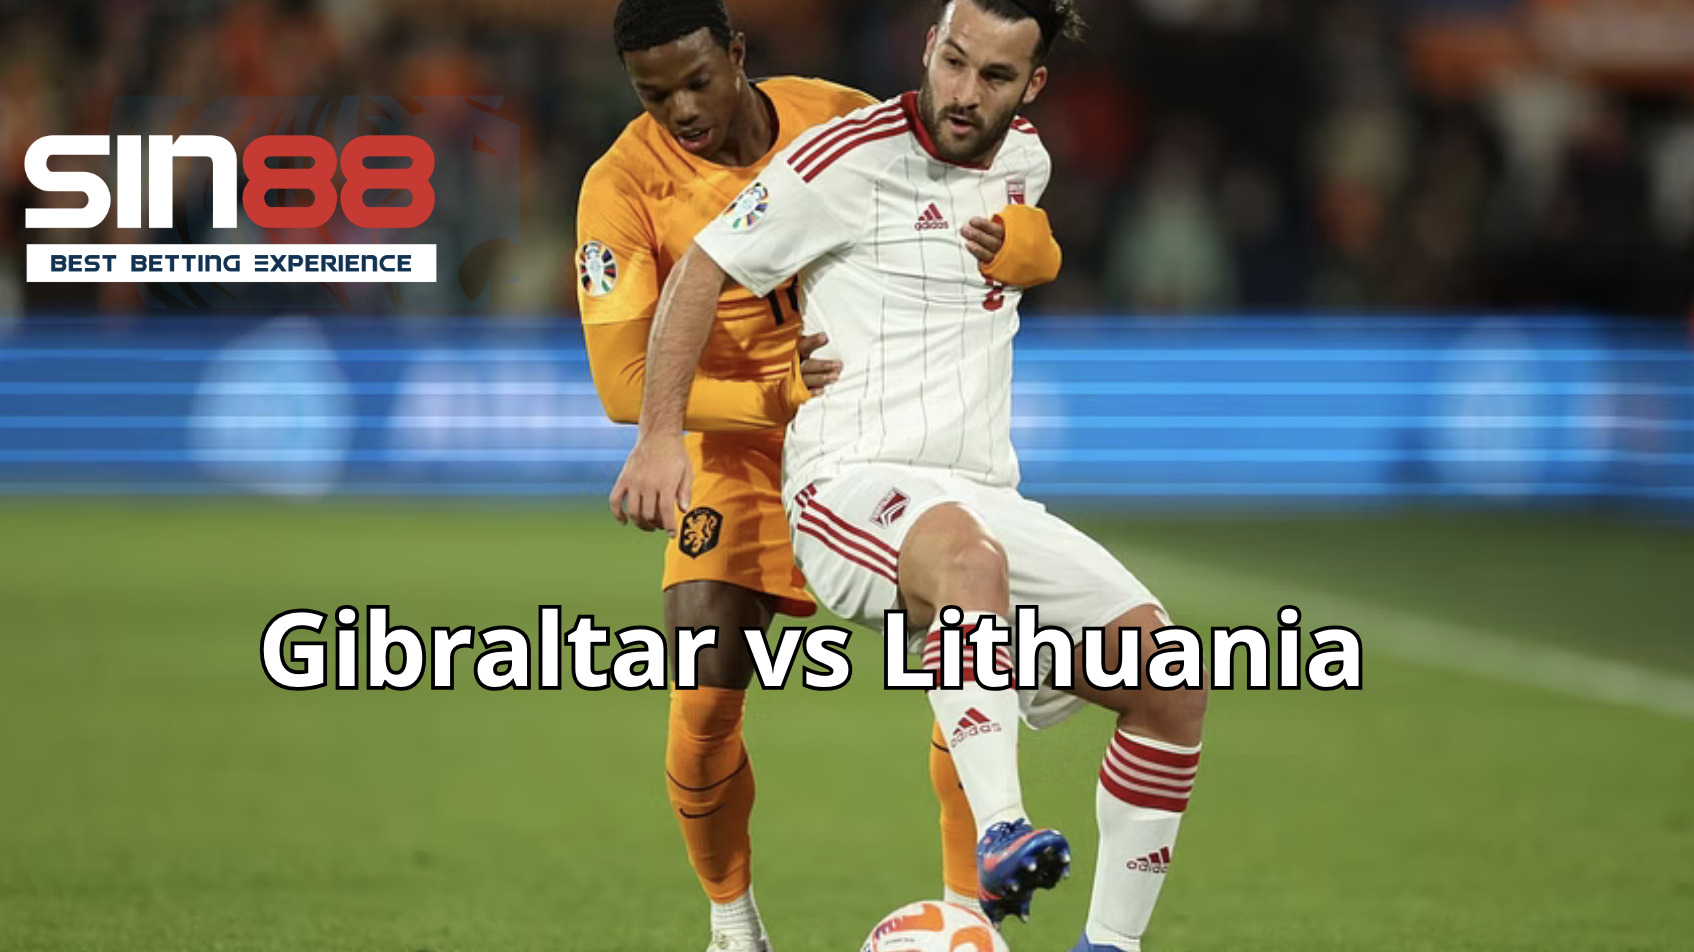 Nhận định soi kèo Gibraltar vs Lithuania từ chuyên gia